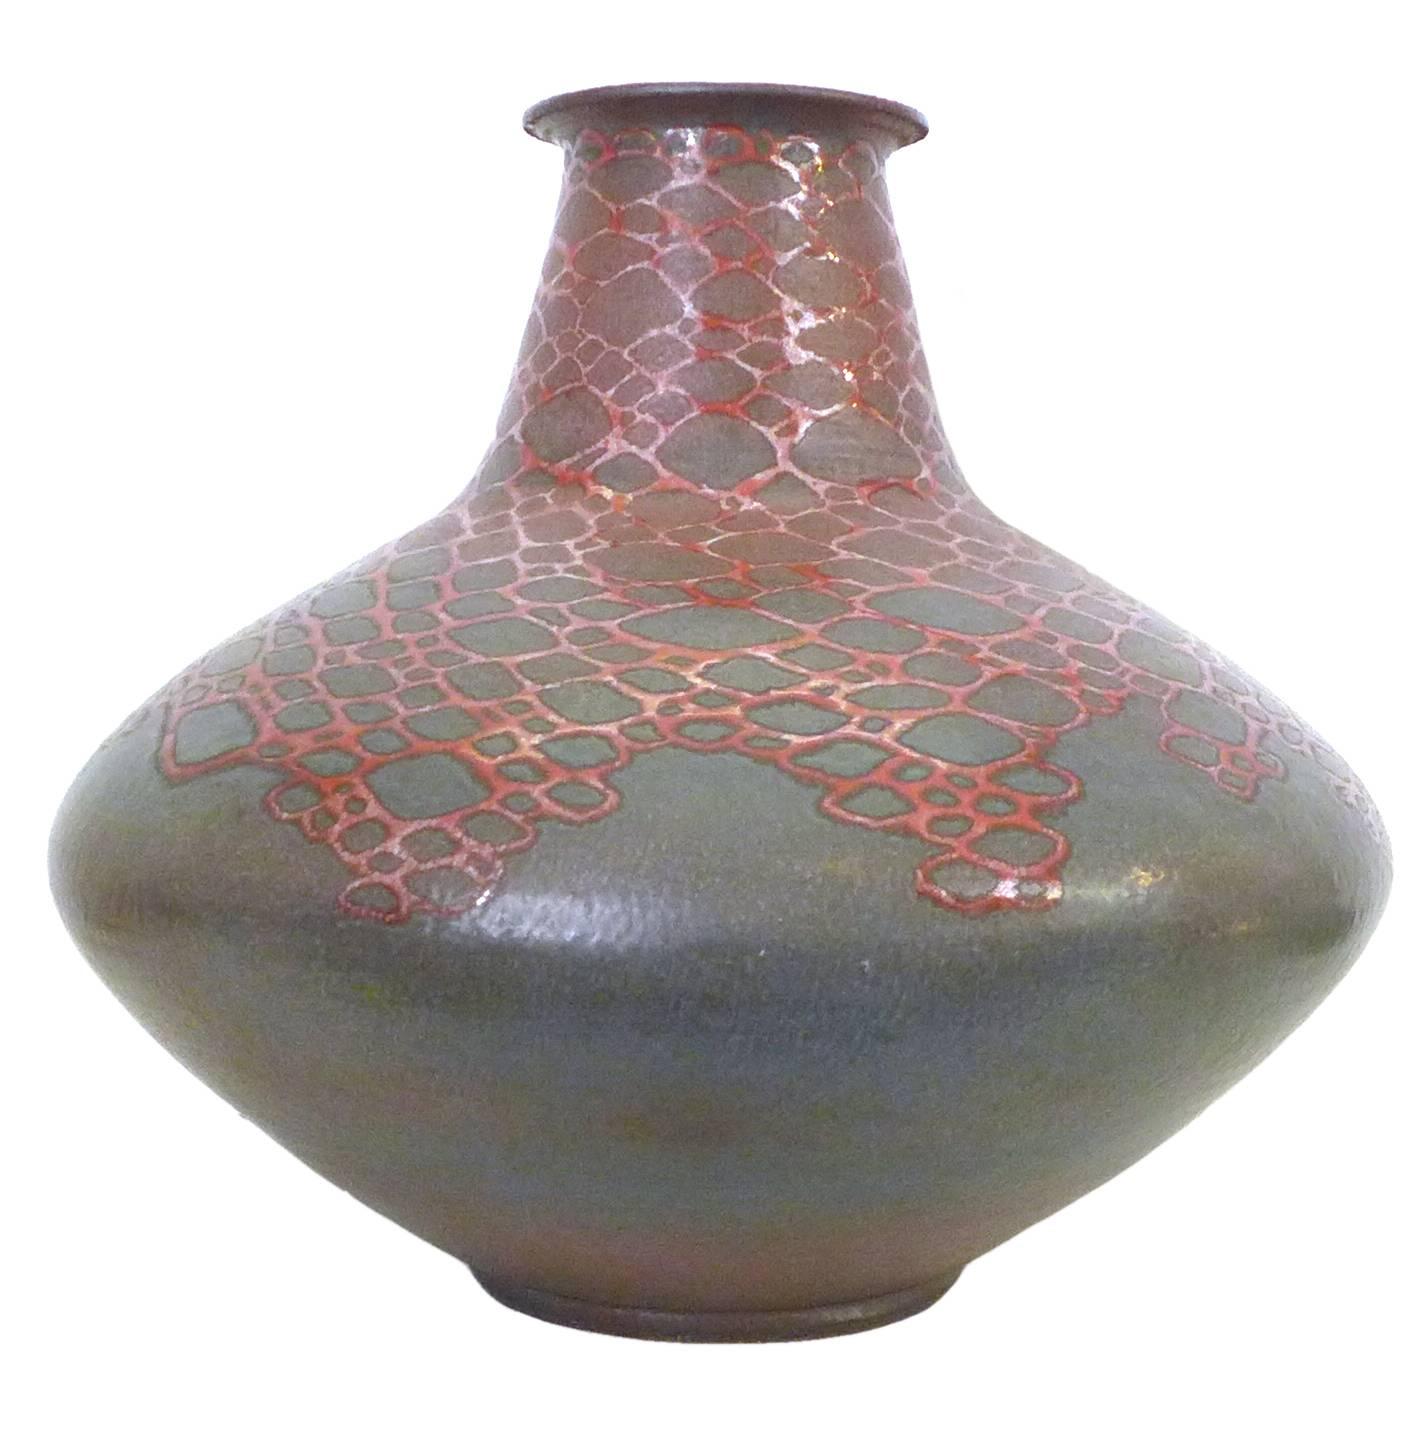 Large "Snakeskin" Ceramic Vase